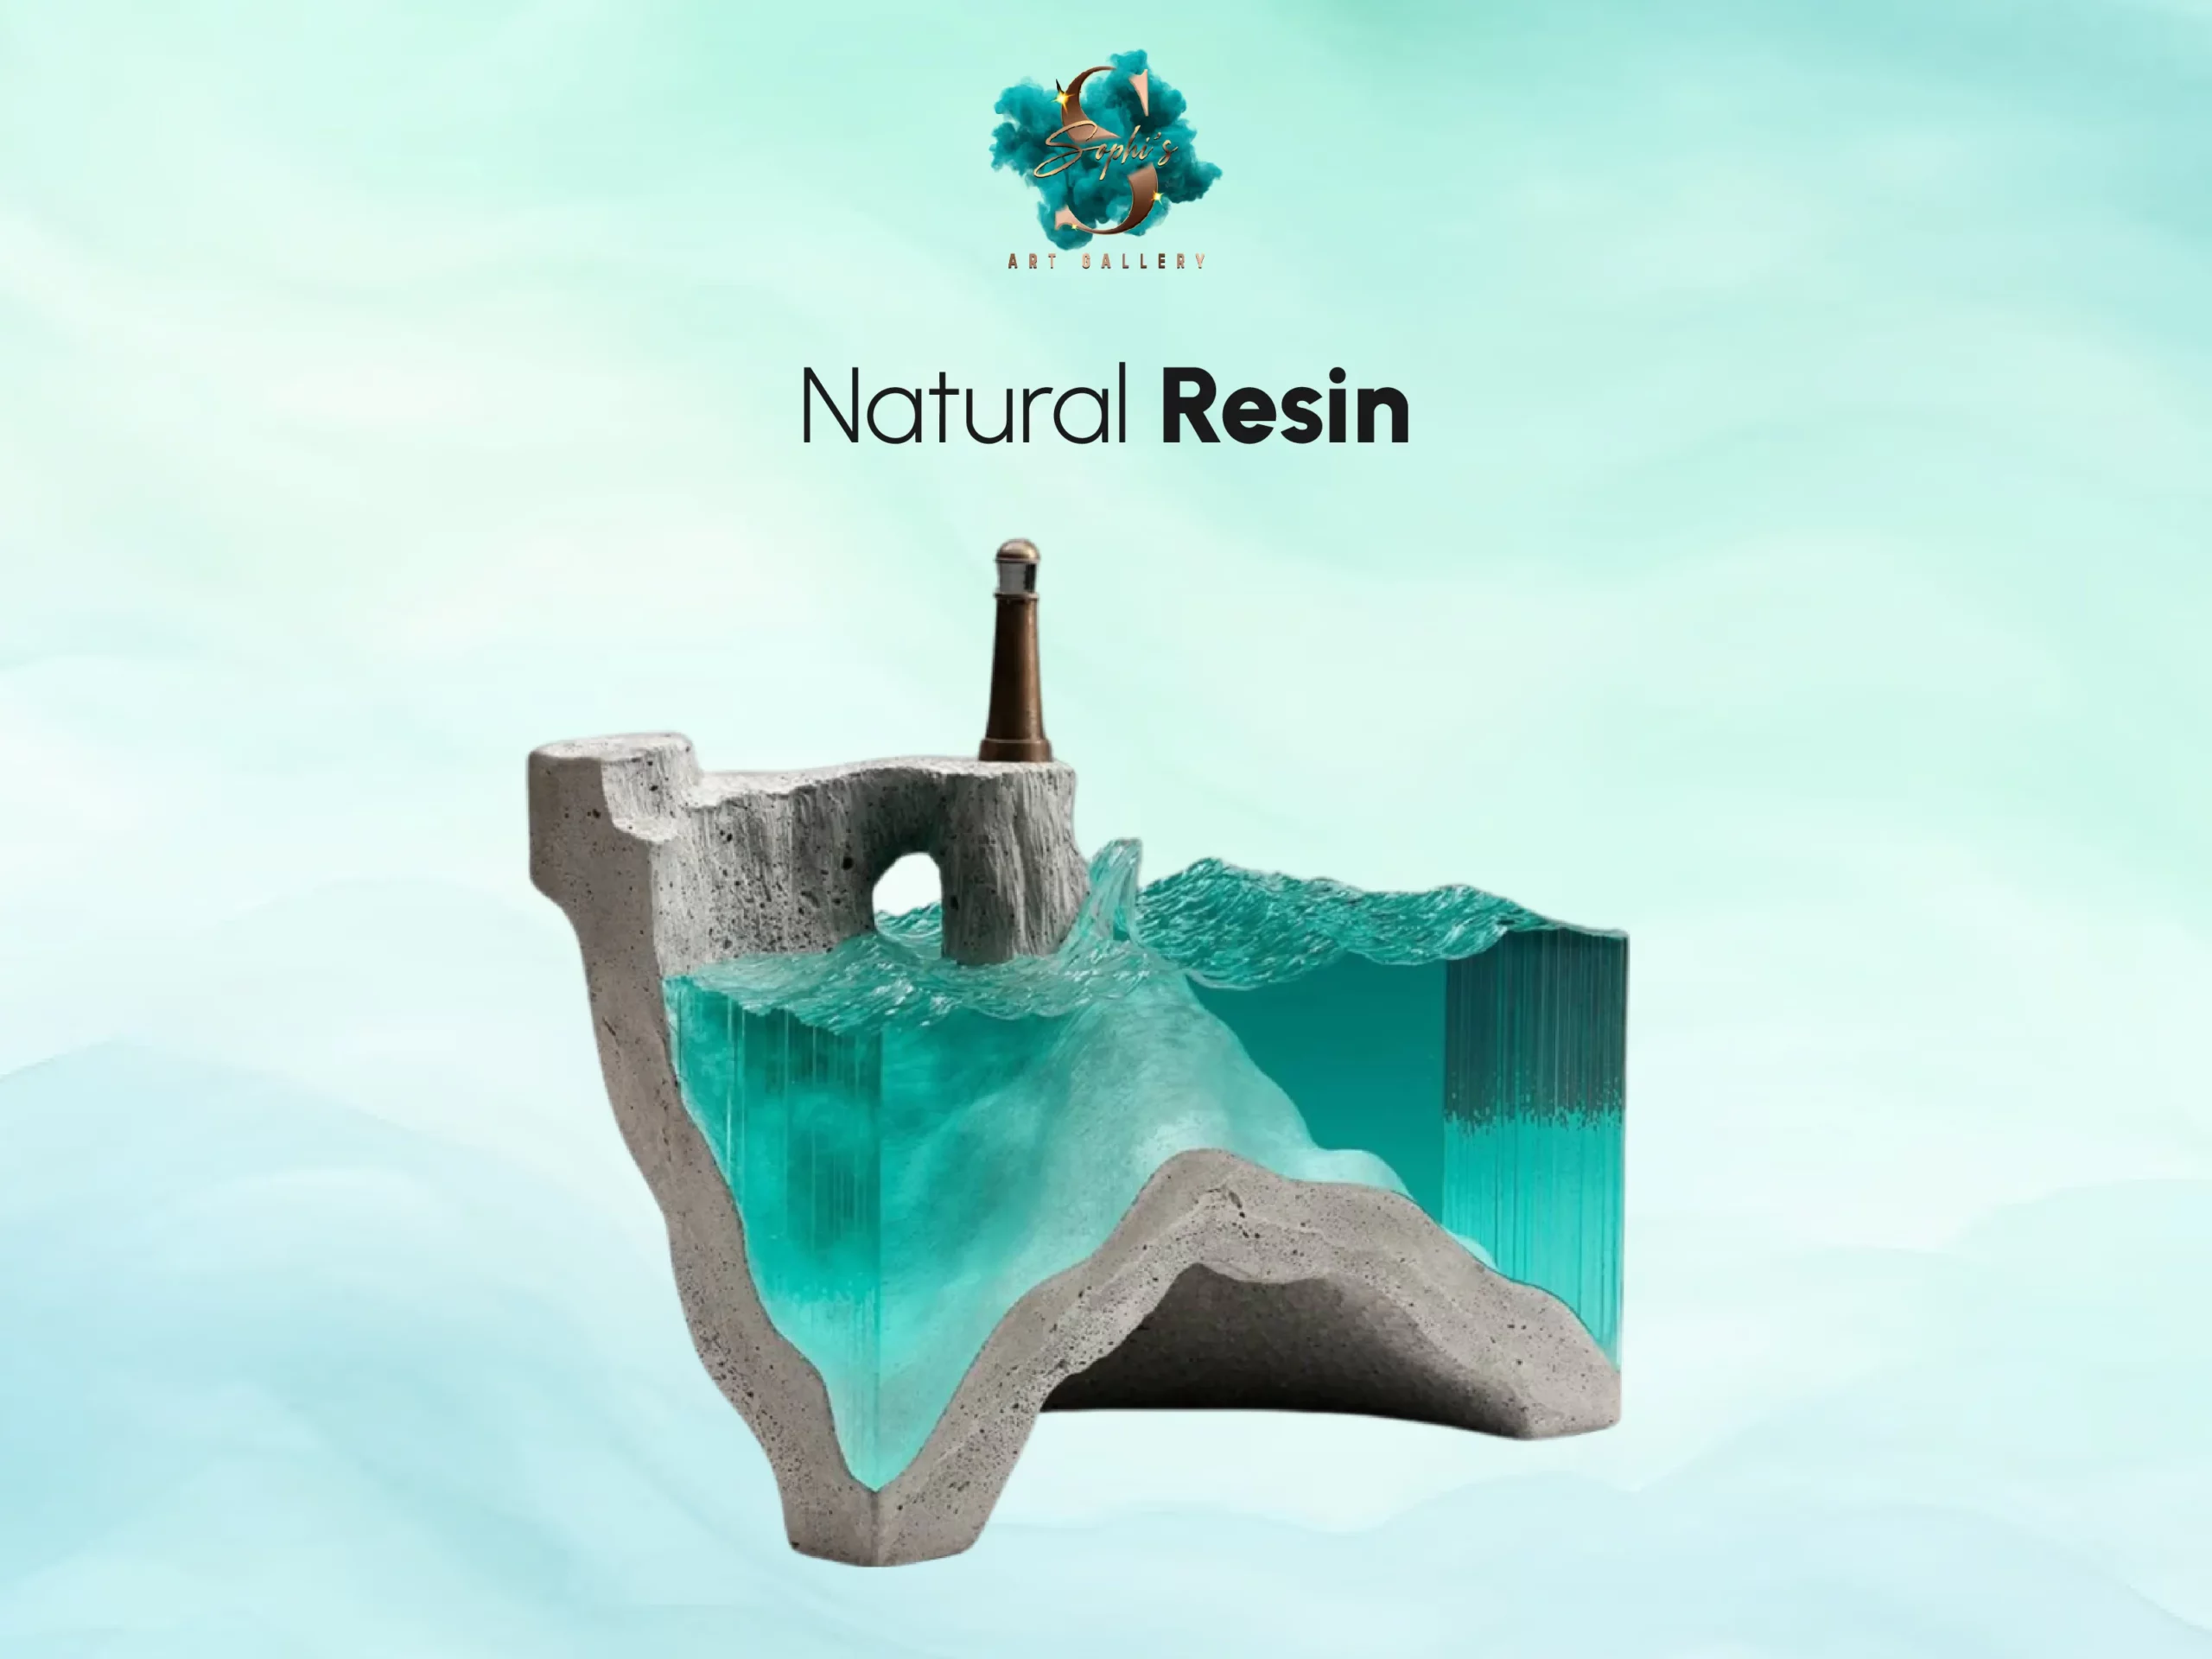 Natural resin